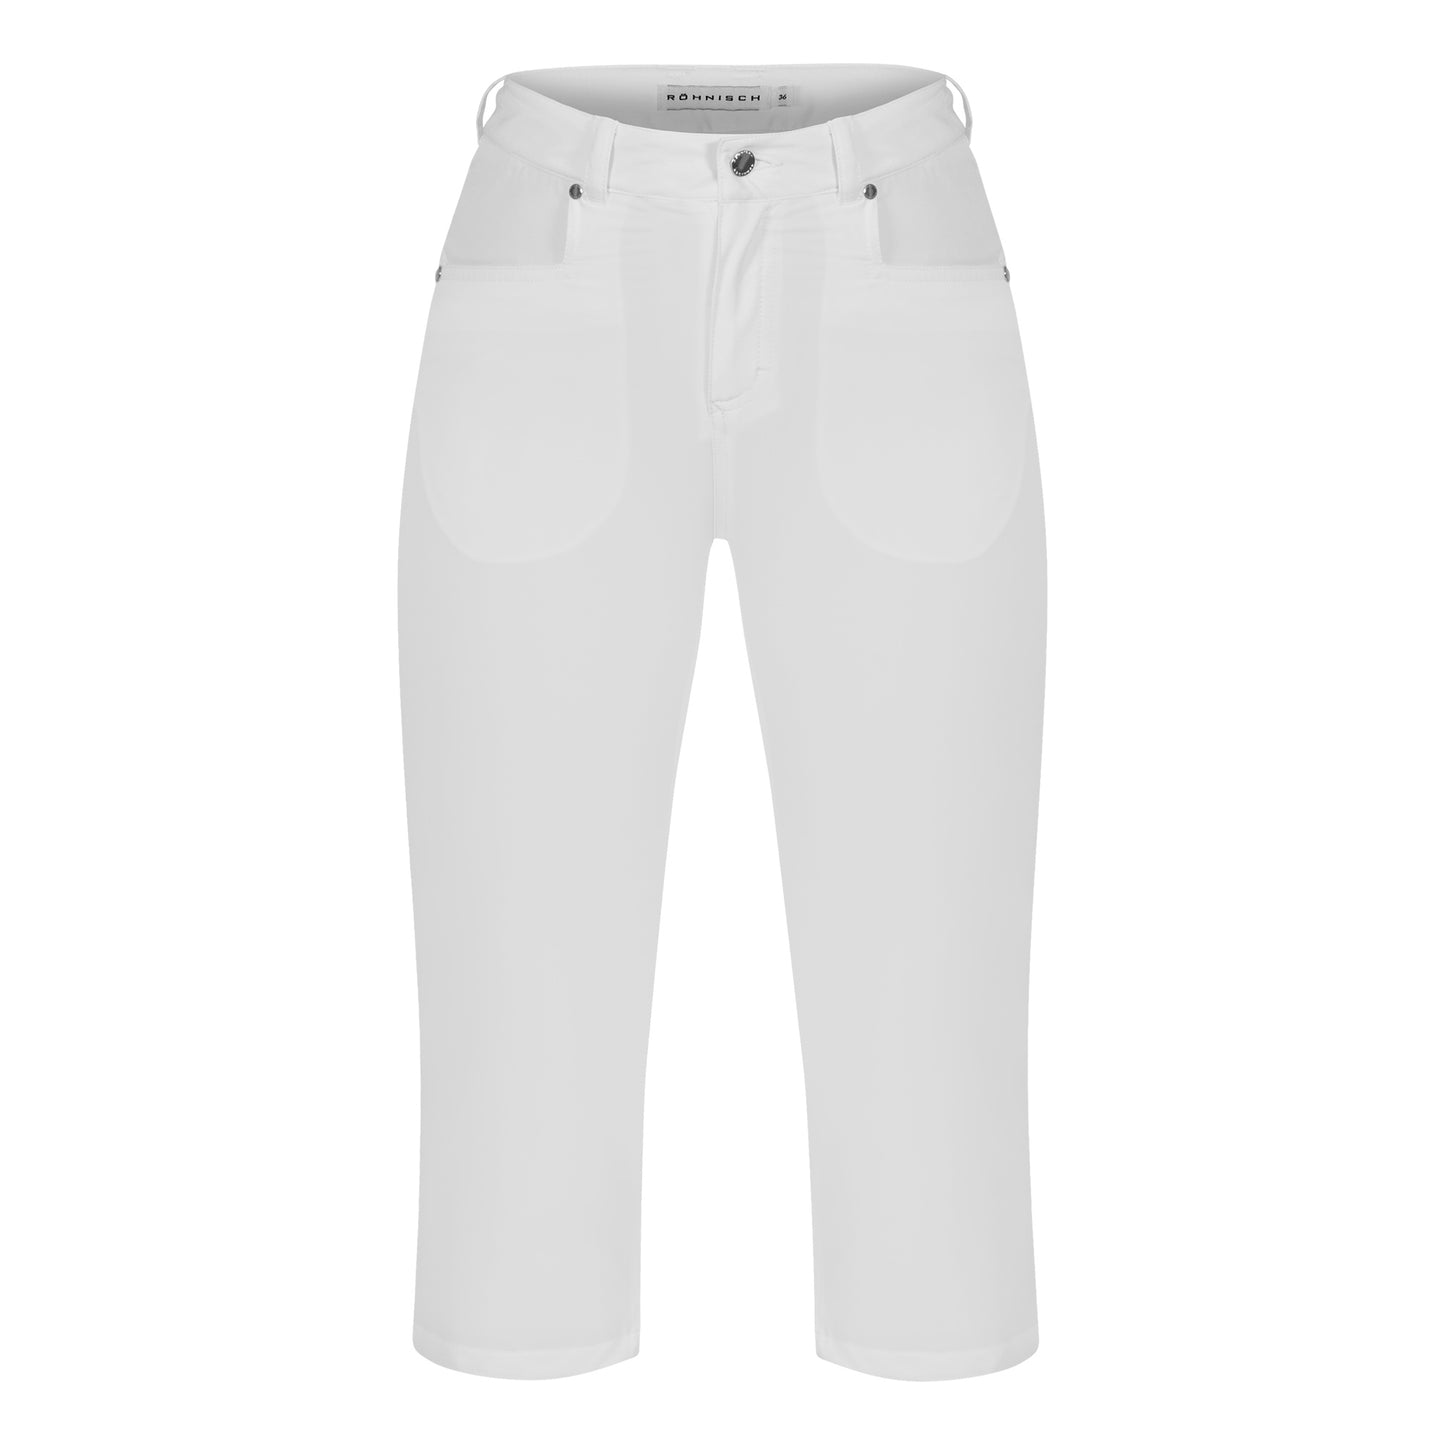 Rohnisch Ladies Lightweight Comfort Golf Capris in White